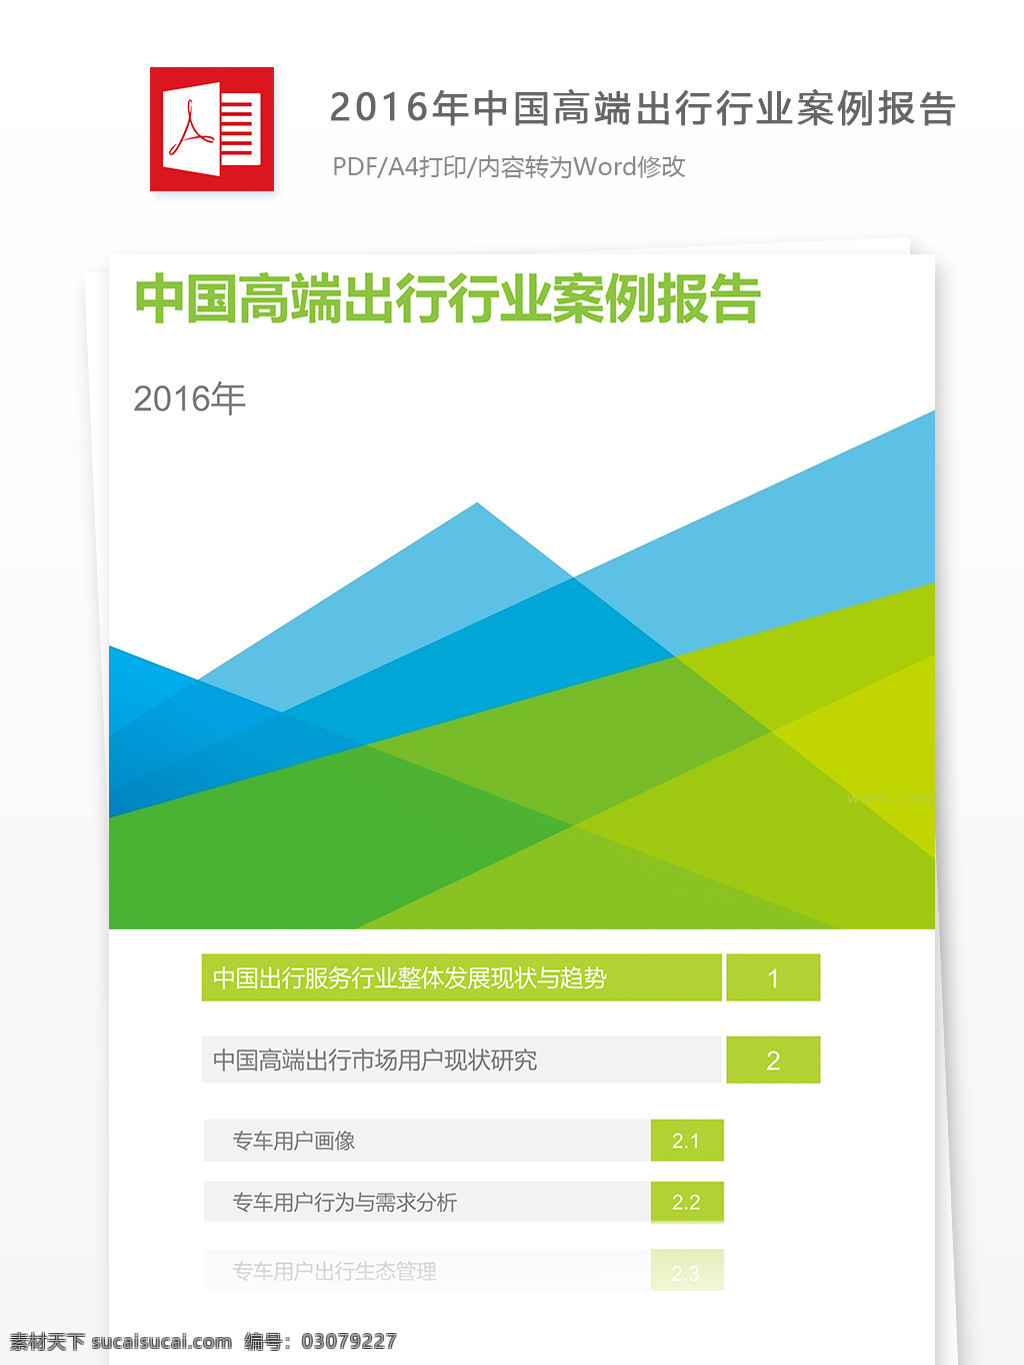 2016 年 中国 高端 出行 行业 案例 报告 高端出行 案例分析 报告分析 商业报告 金融分析